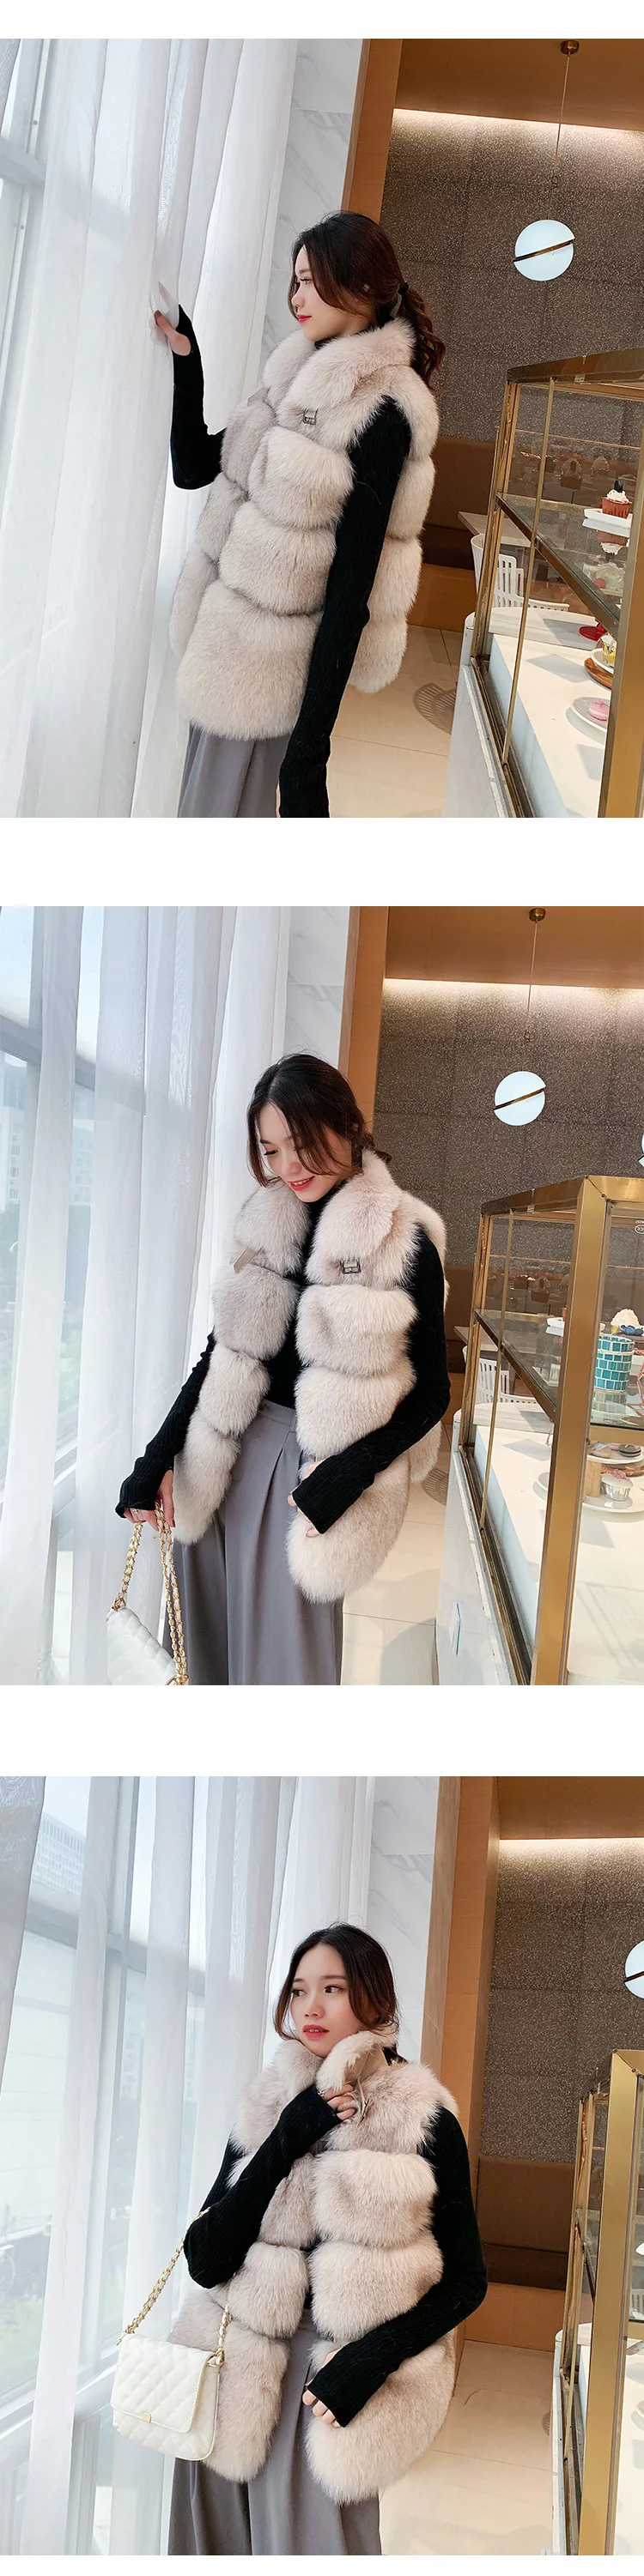 ZDFURS* зима дизайн модные жилеты Женский натуральный Лисий мех жилет толстый теплый женский меховой жилет куртка